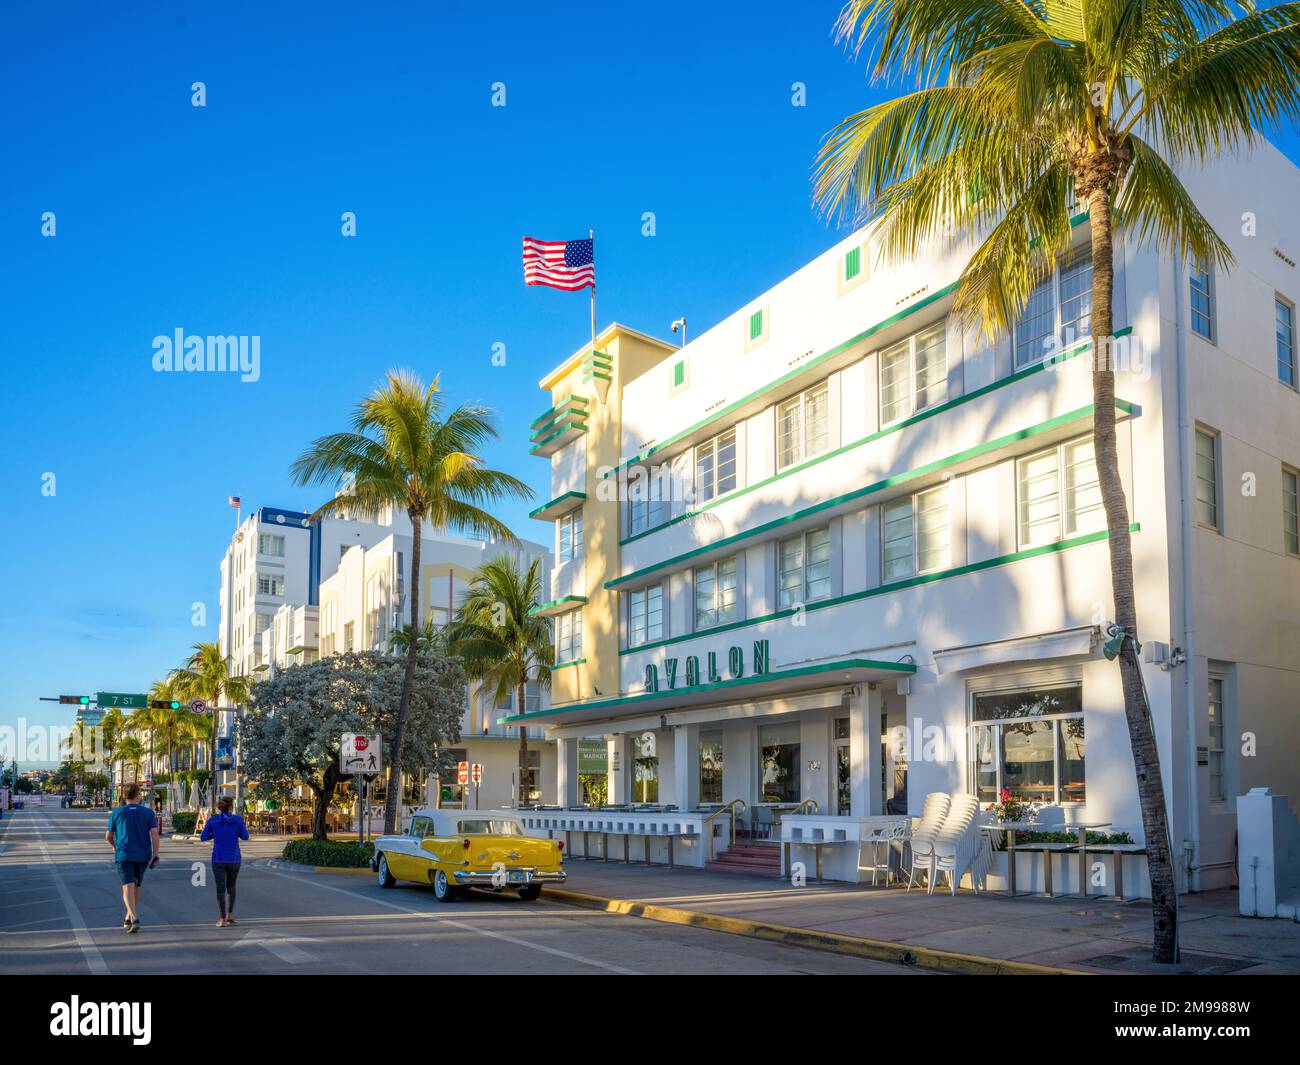 Avalon Hotel, les gens marchent, Ocean Drive, South Miami Beach, Miami, Floride, États-Unis Banque D'Images